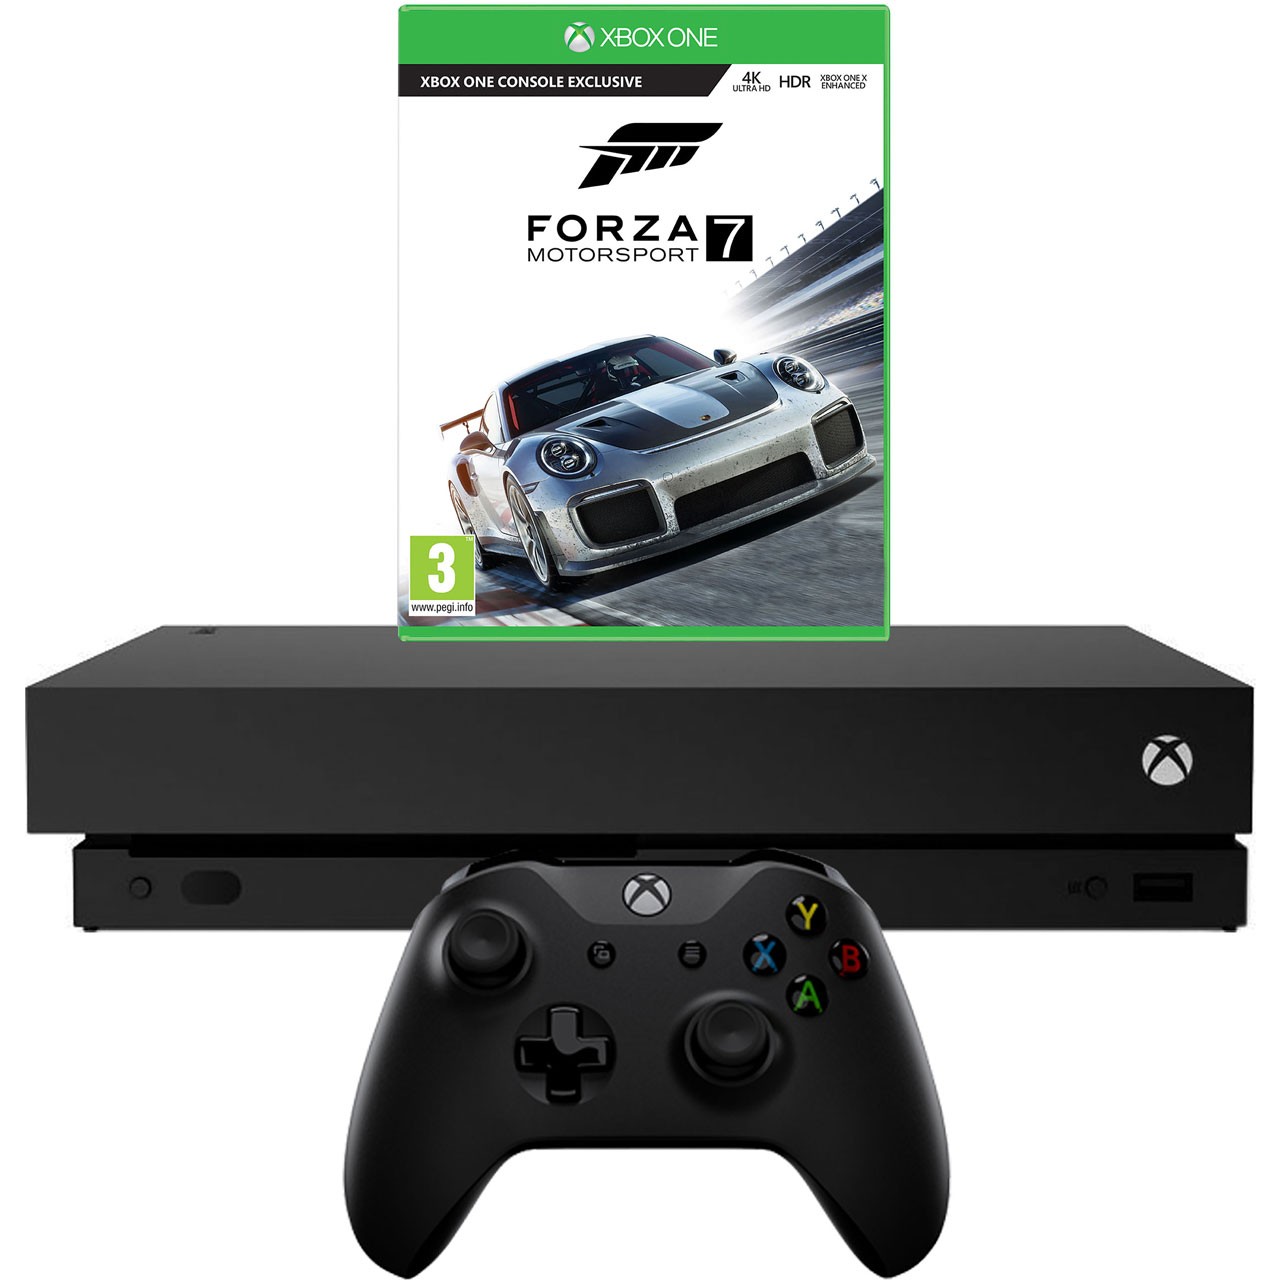 Xbox One X 1 TB - Forza Motorsport 7 Bundle - Xbox One Gépek